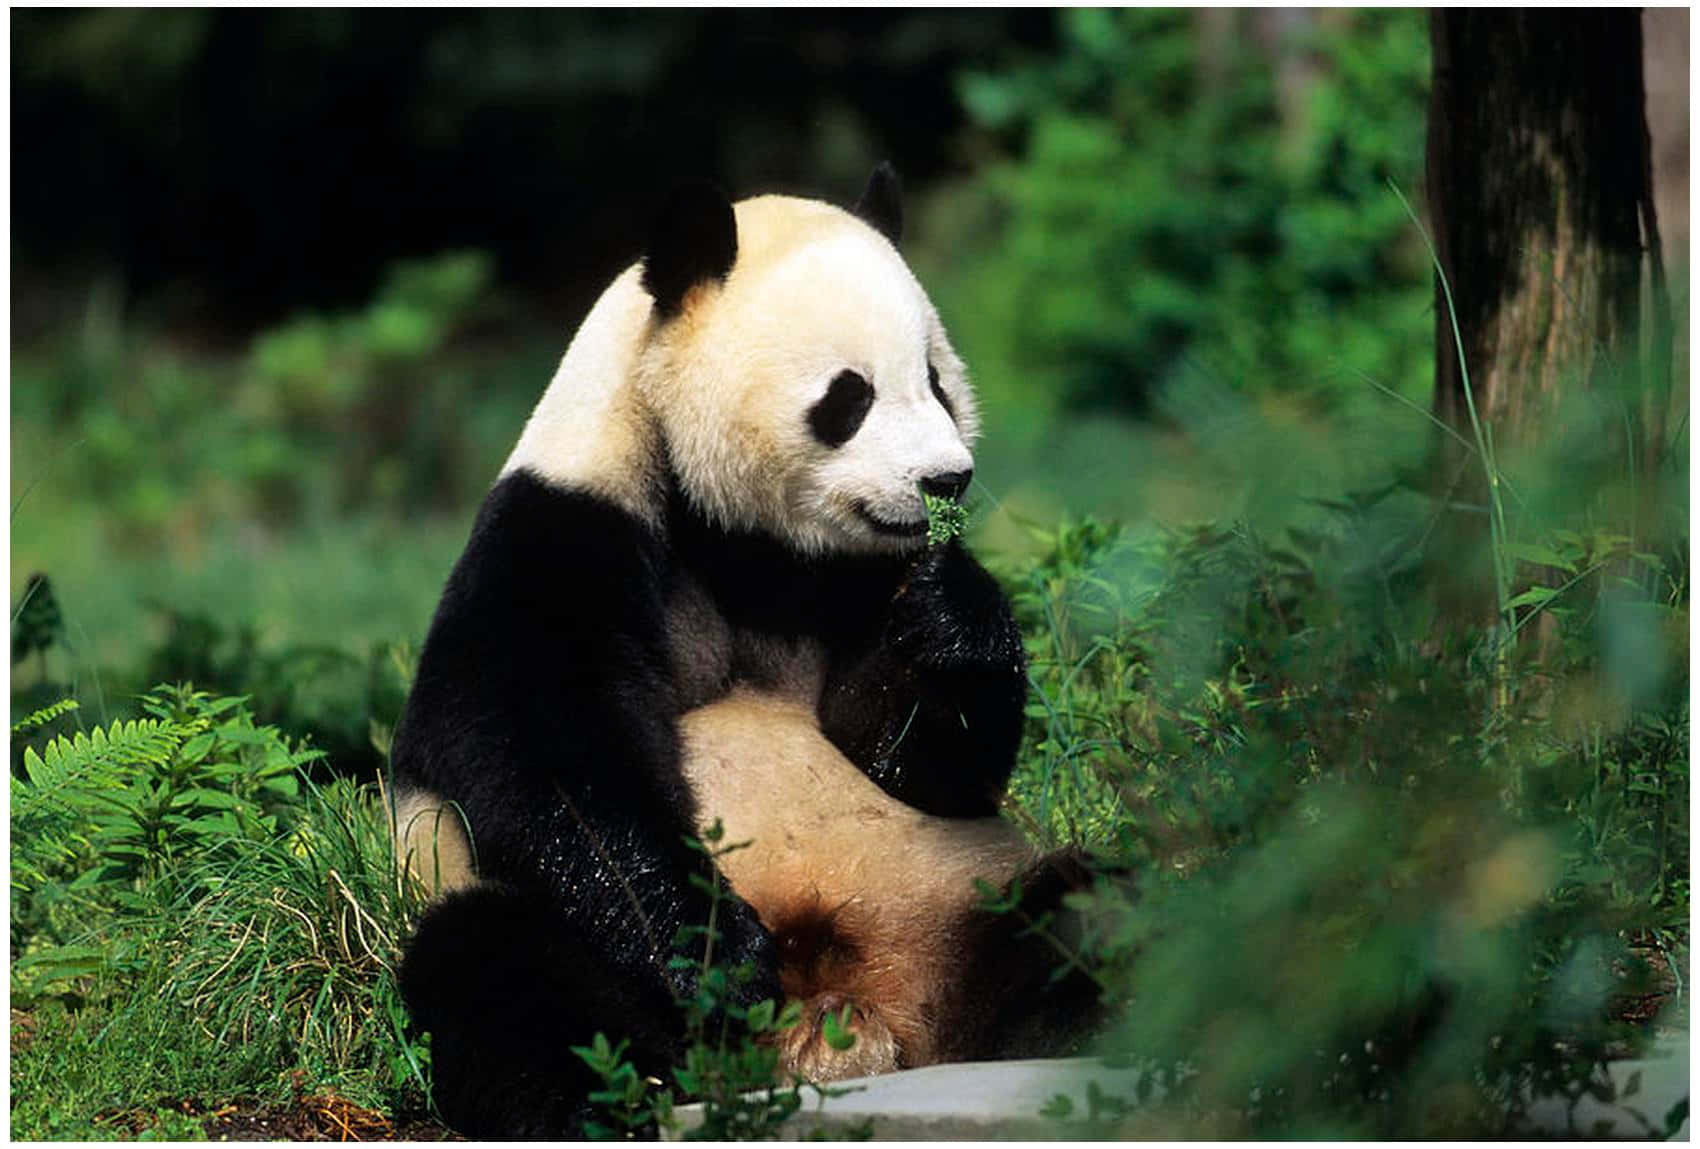 A Cute Panda Sitting in the Grass